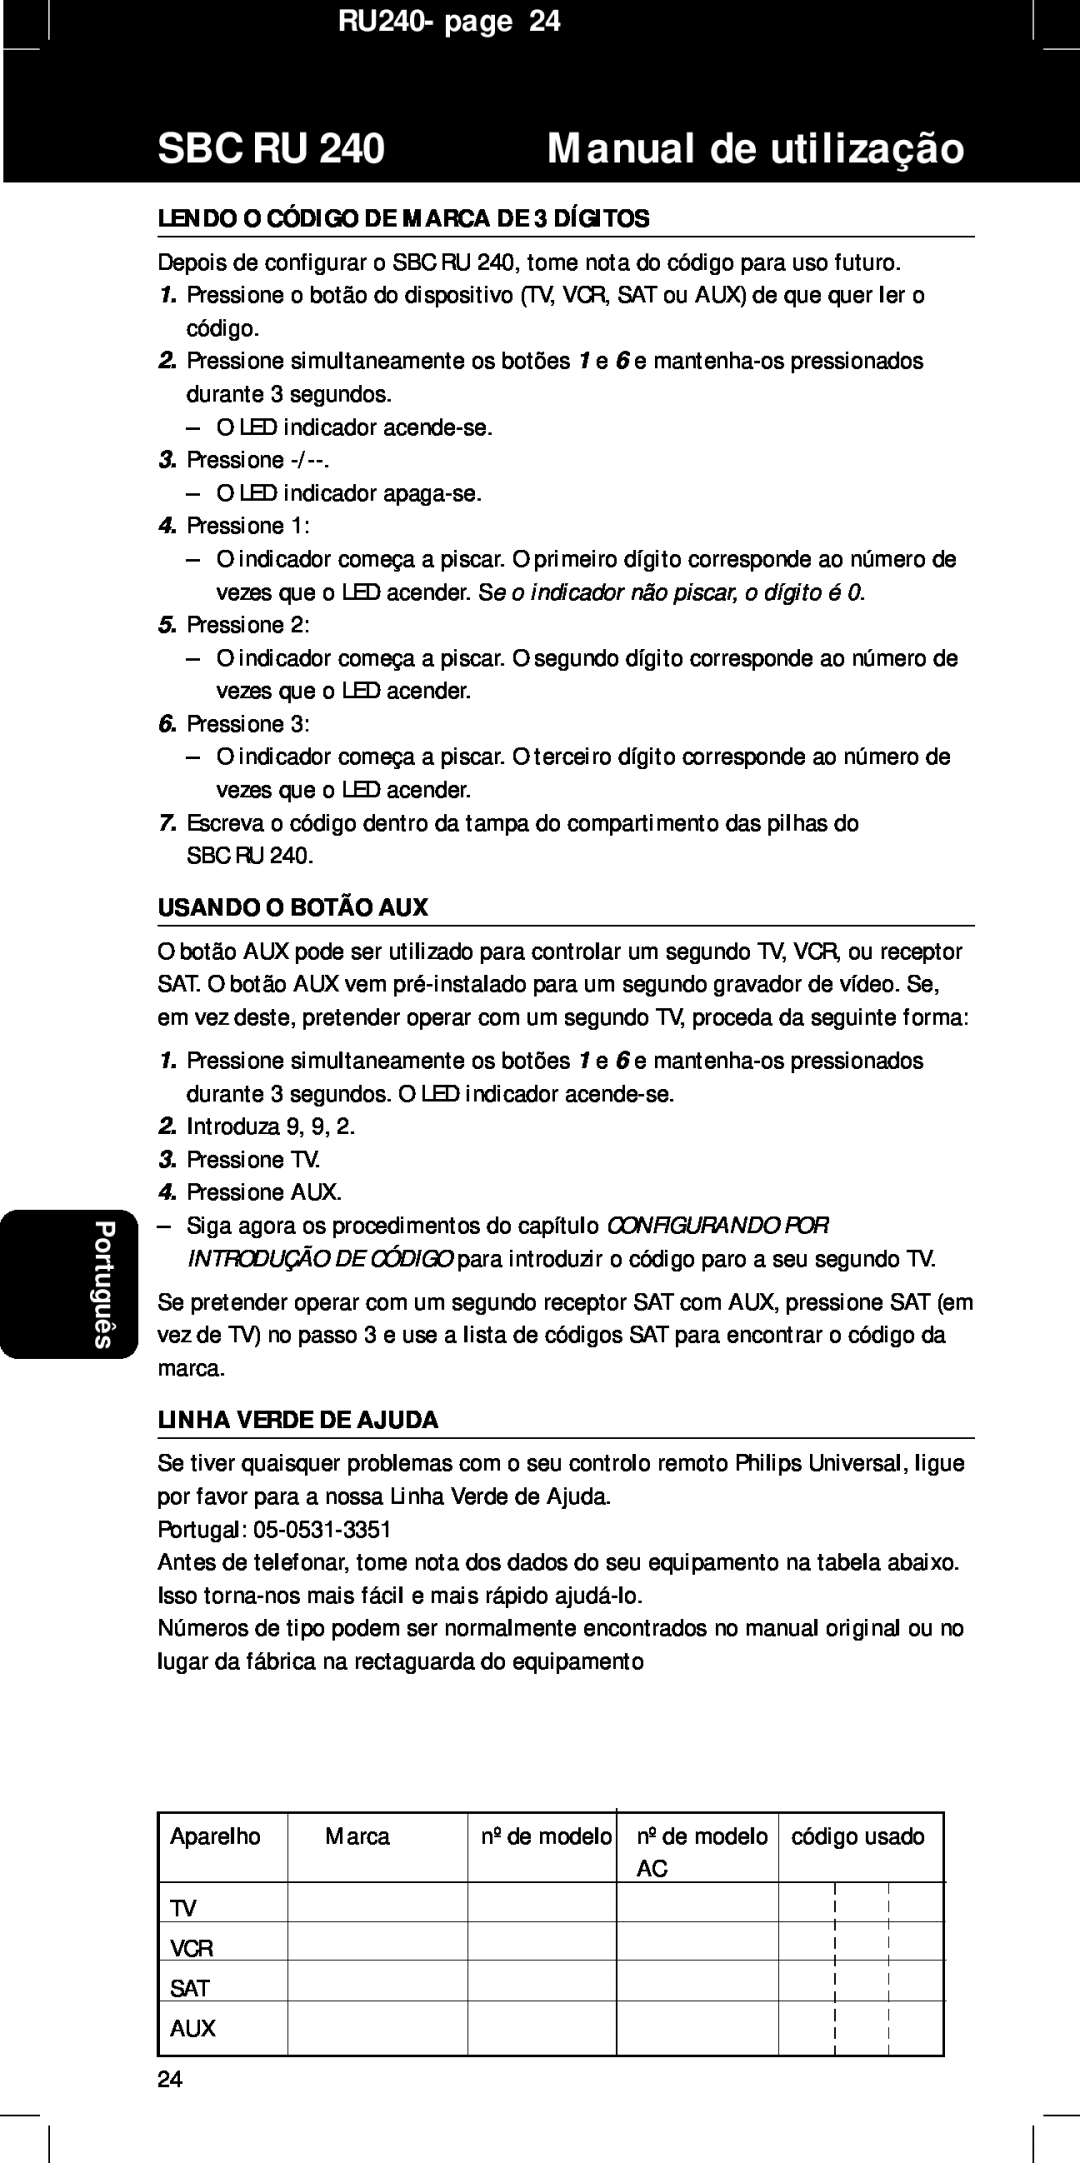 Philips RU240 LENDO O CÓDIGO DE MARCA DE 3 DÍGITOS, Usando O Botão Aux, Linha Verde De Ajuda, Sbc Ru, Manual de utilização 